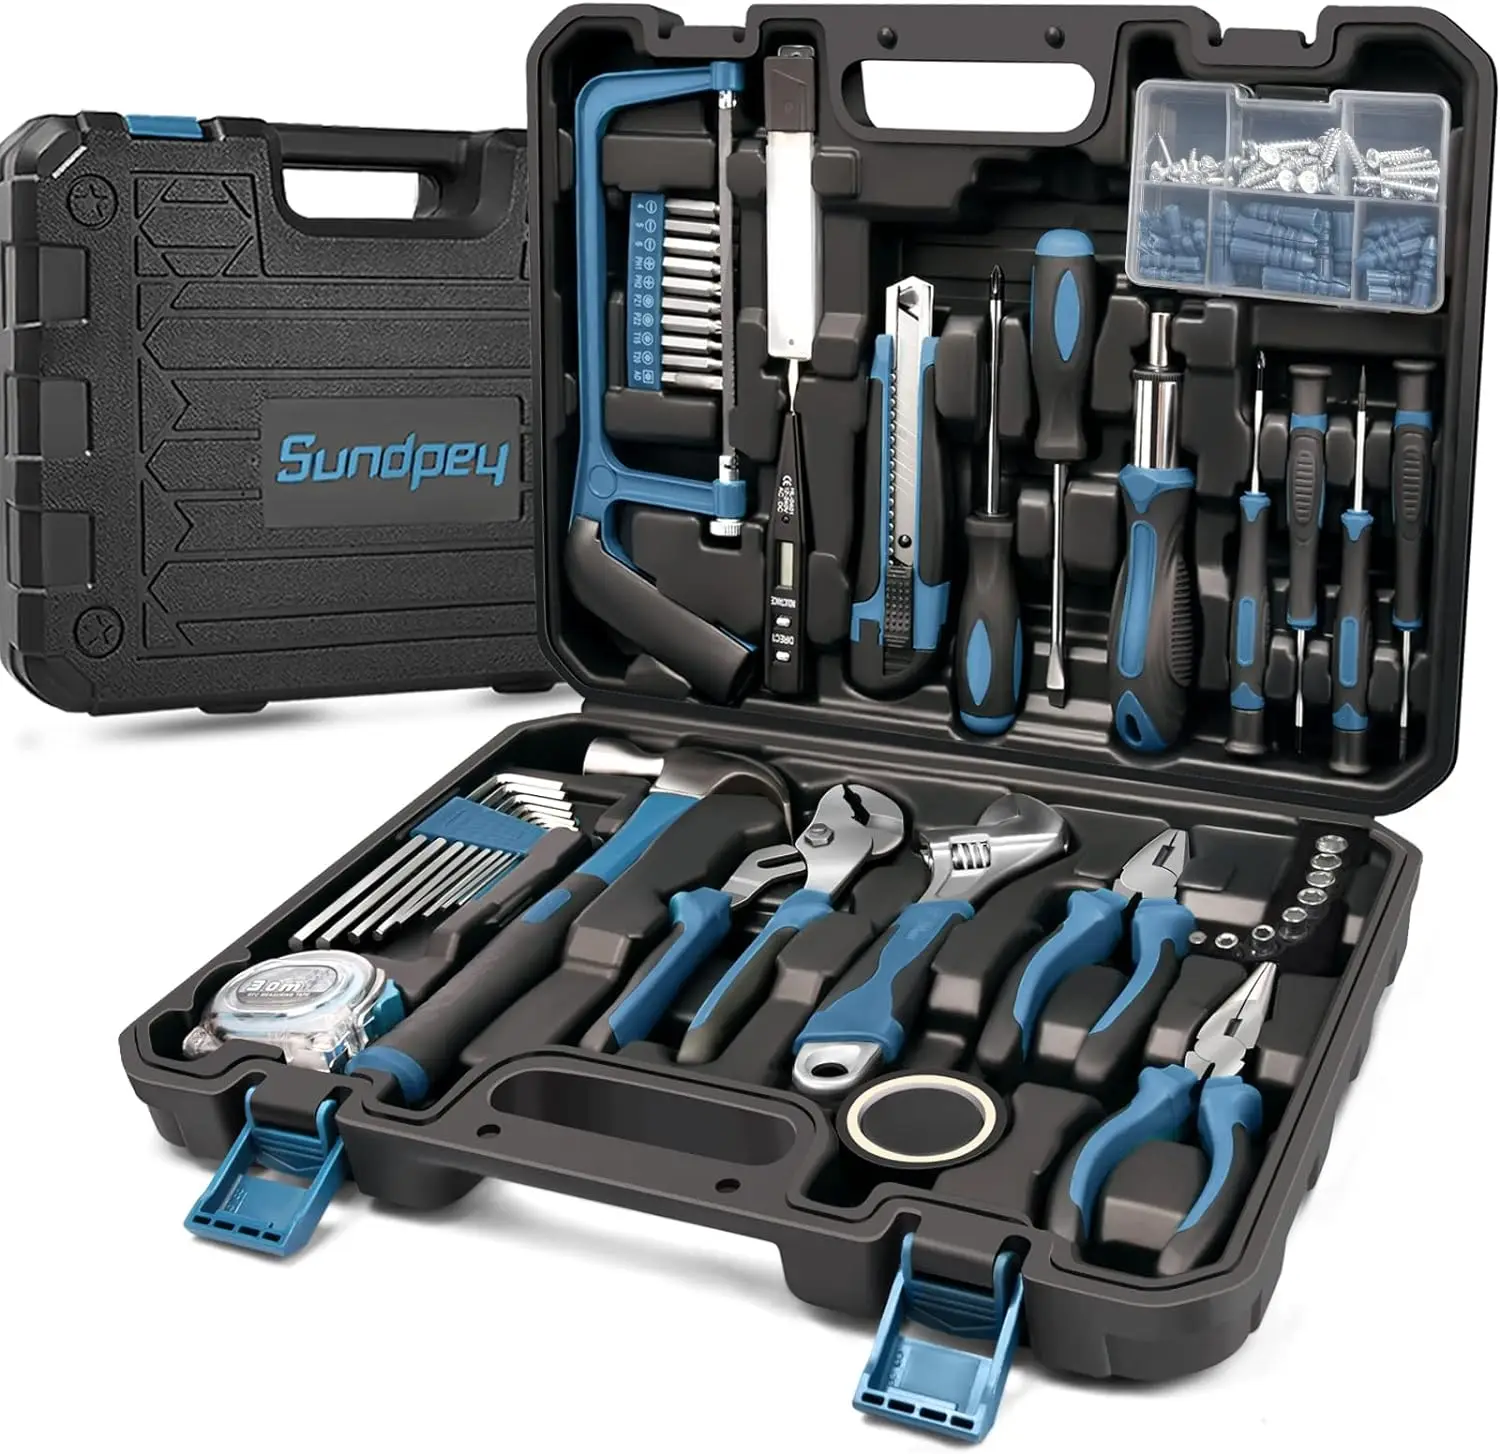 sundpey-kit-d'outils-portables-pour-la-maison-avec-etui-et-tournevis-a-cliquet-ensemble-d'outils-de-reparation-a-la-main-invitation-de-base-domestique-148-pieces